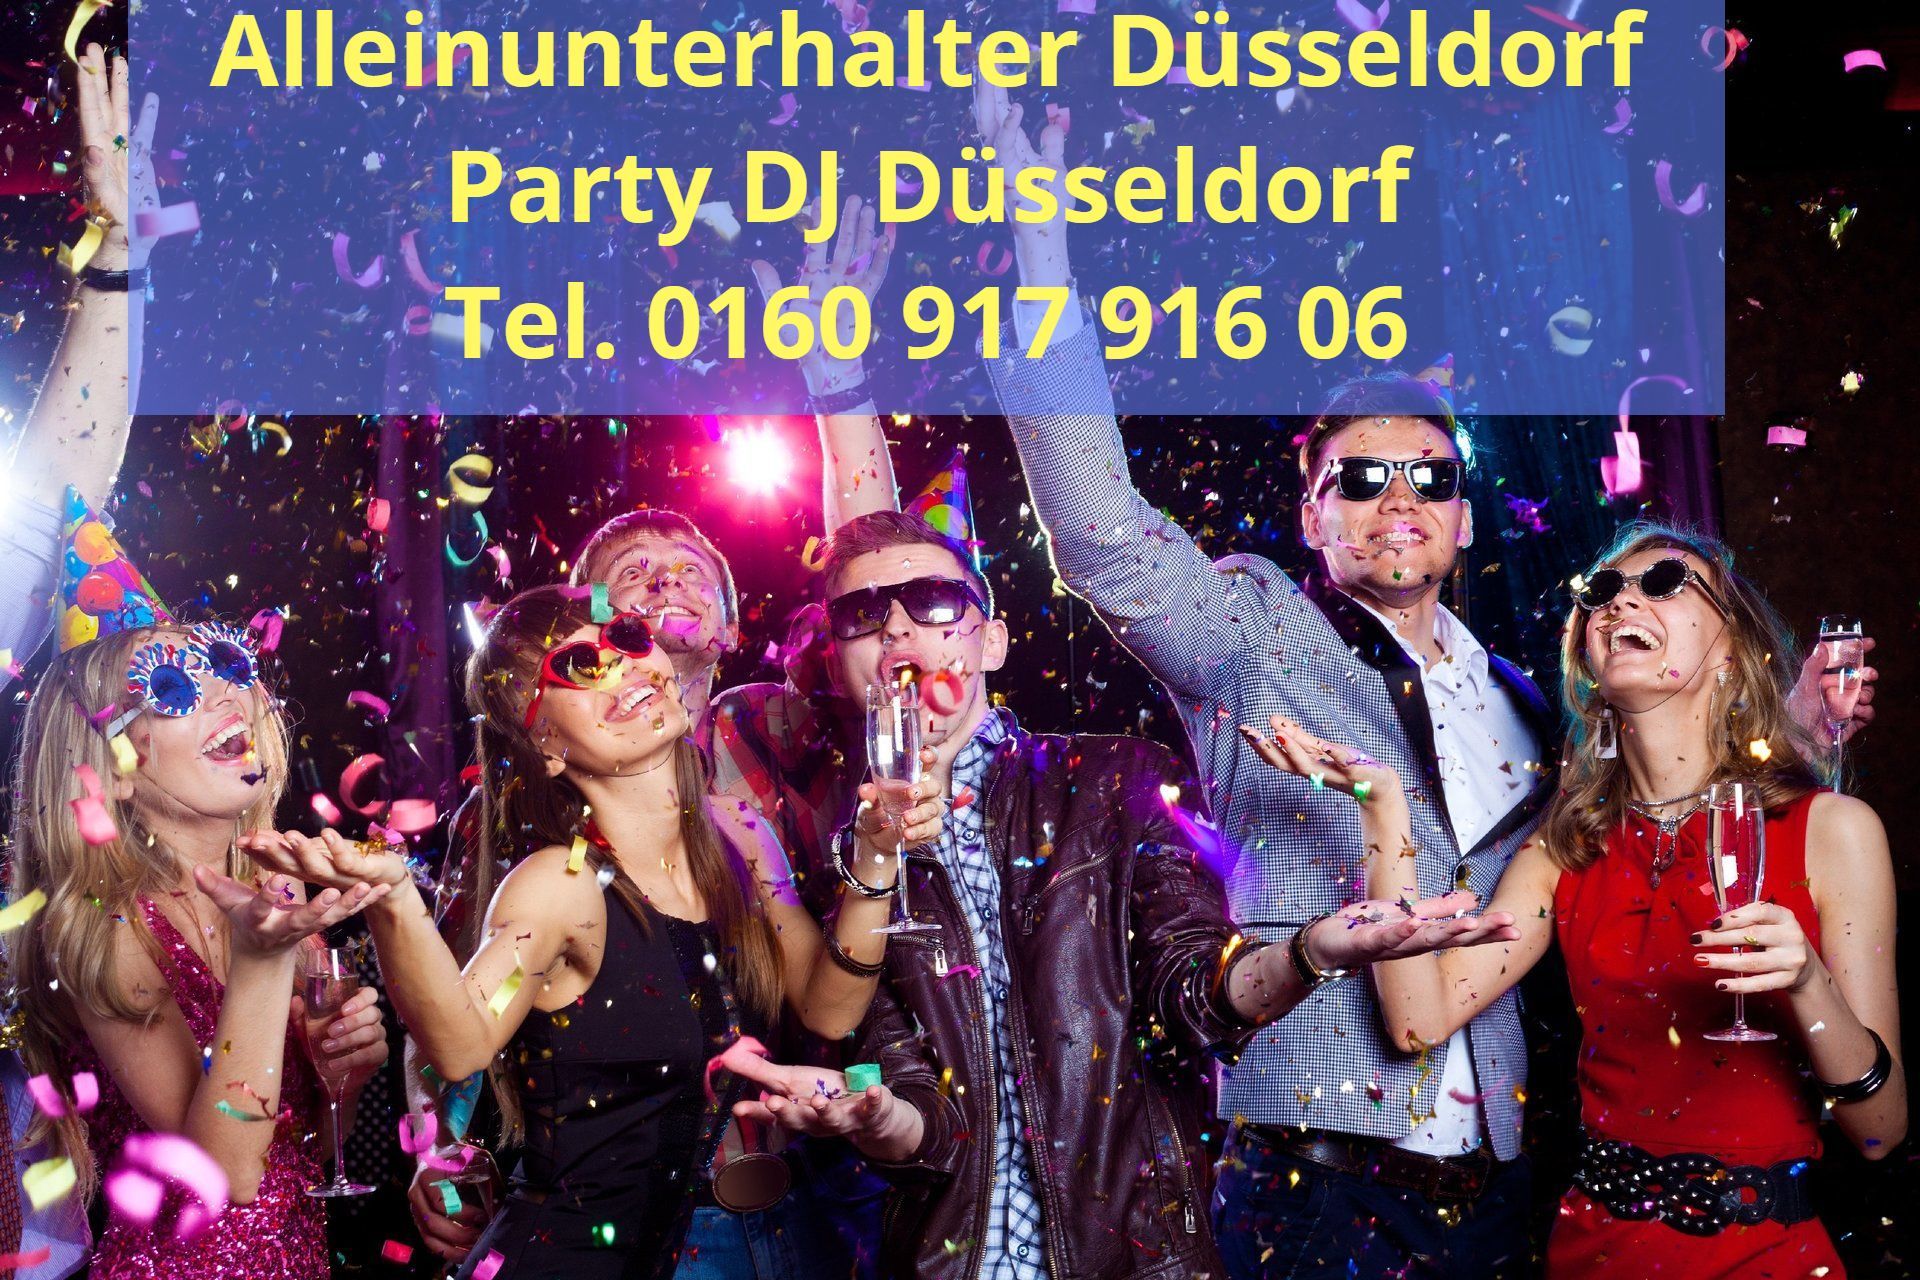 Alleinunterhalter Düsseldorf und DJ Düsseldorf